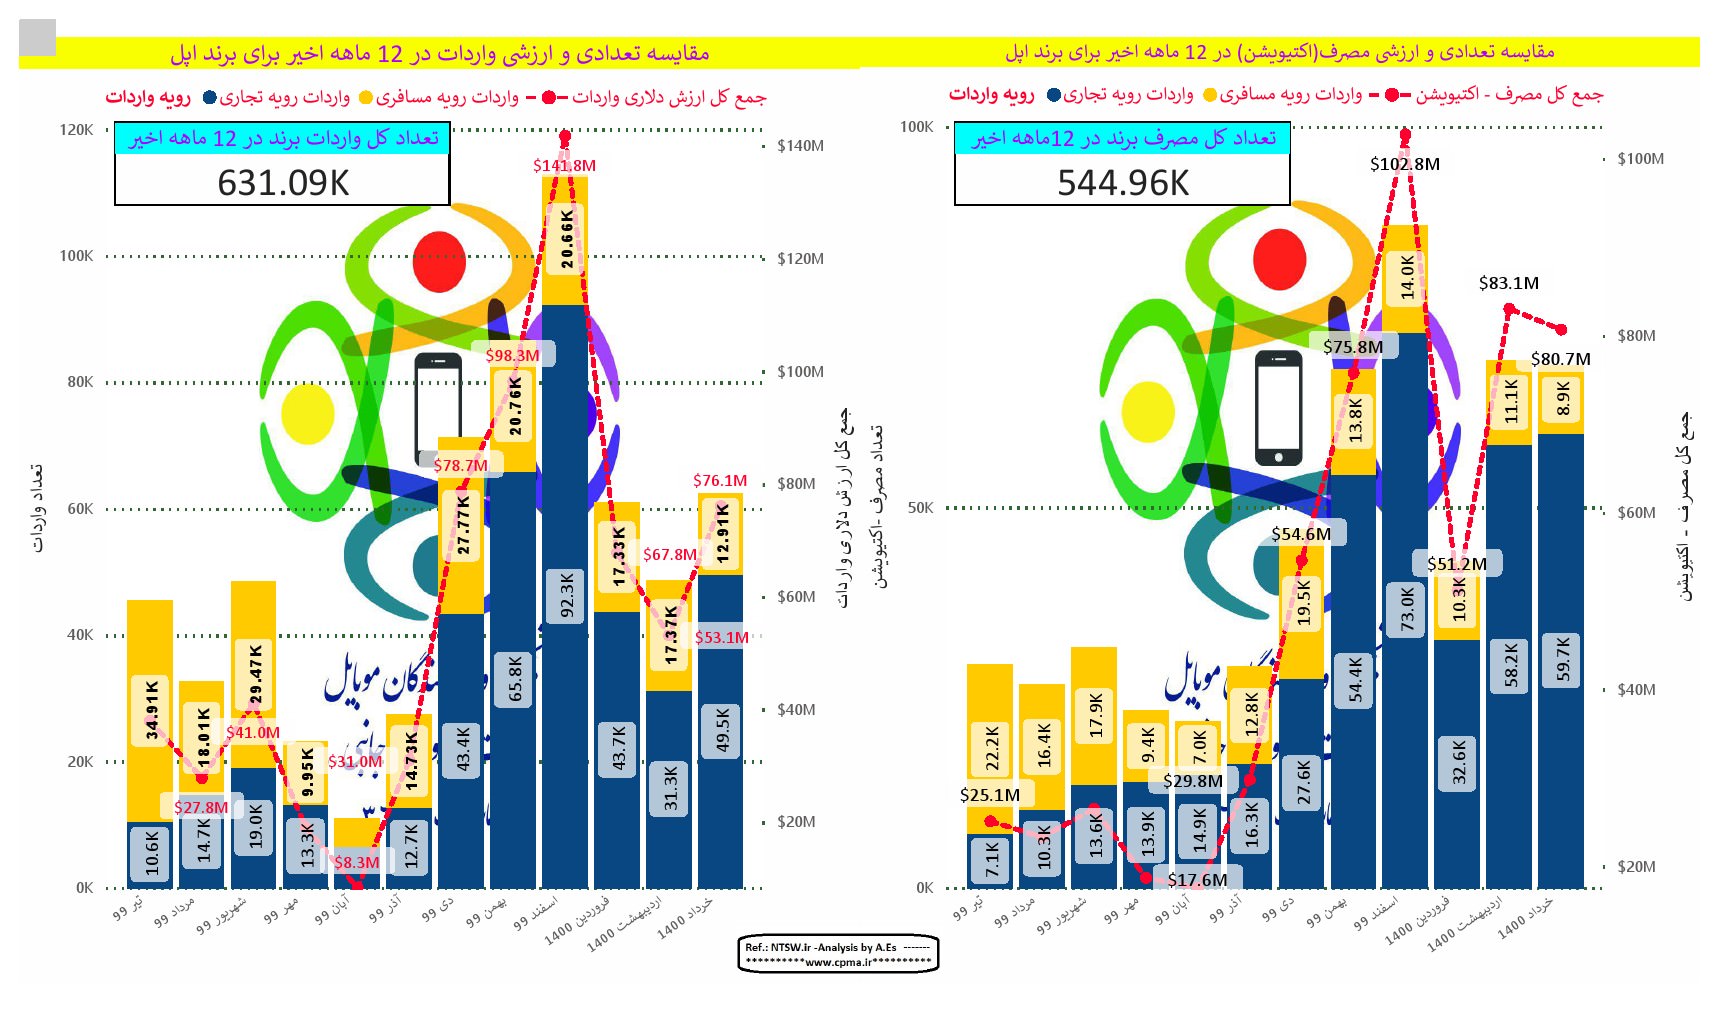 نمودار مقایسه میزان واردات و فعالسازی گوشی اپل از تیر ۹۹ تا خرداد ۱۴۰۰